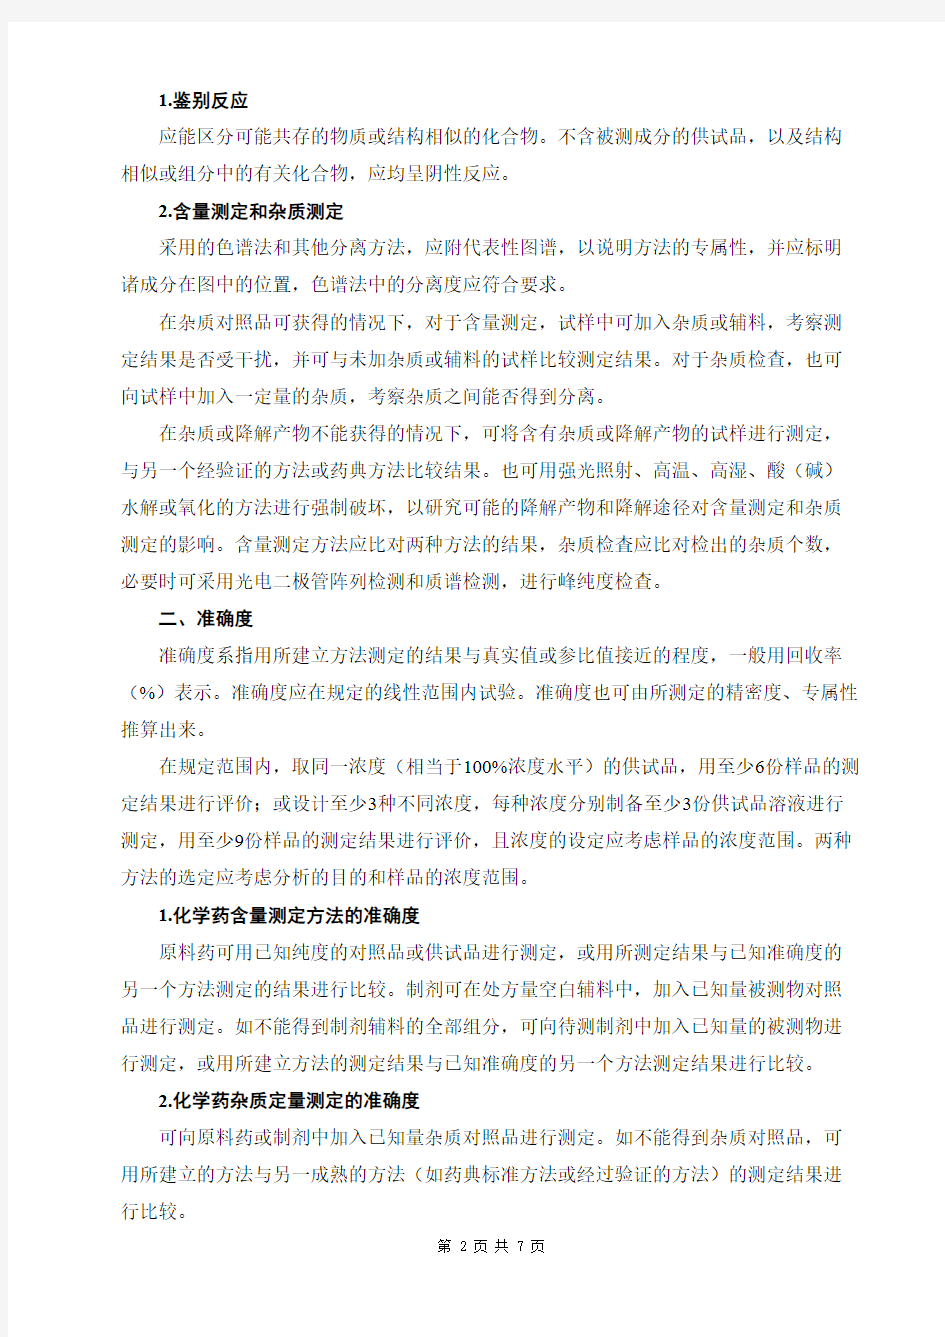 中国药典2020年版  9101  分析方法验证指导原则